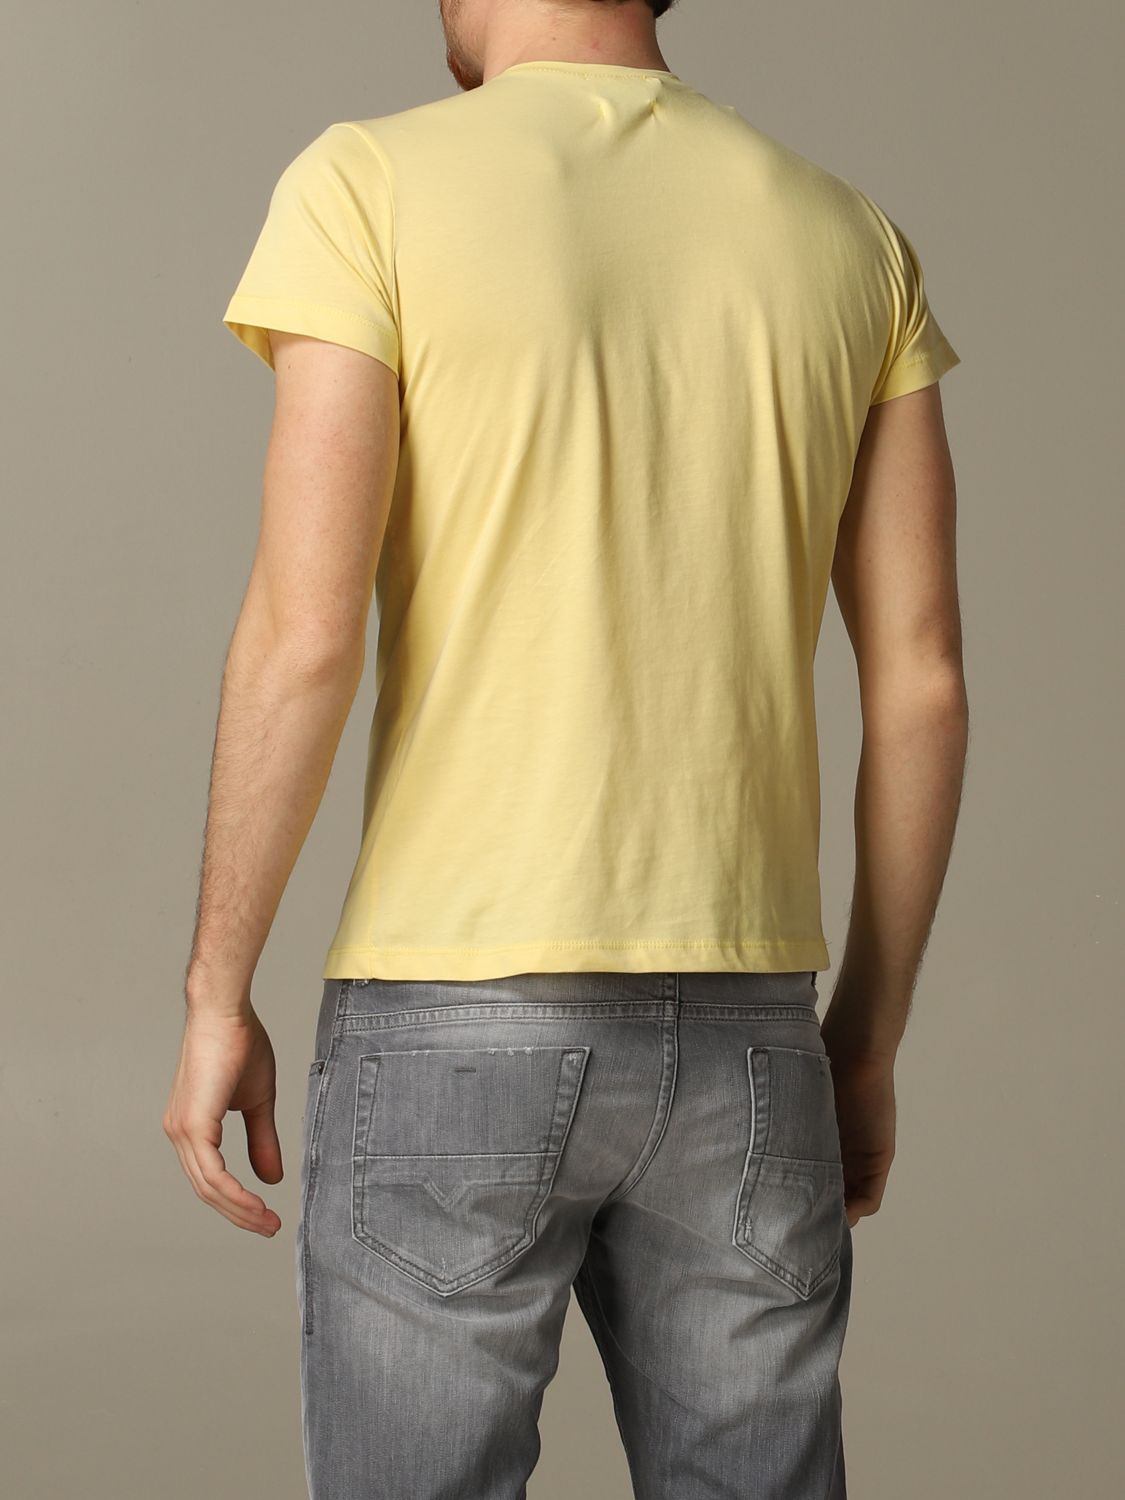 Camiseta Xc: Camiseta Xc para hombre limón 2